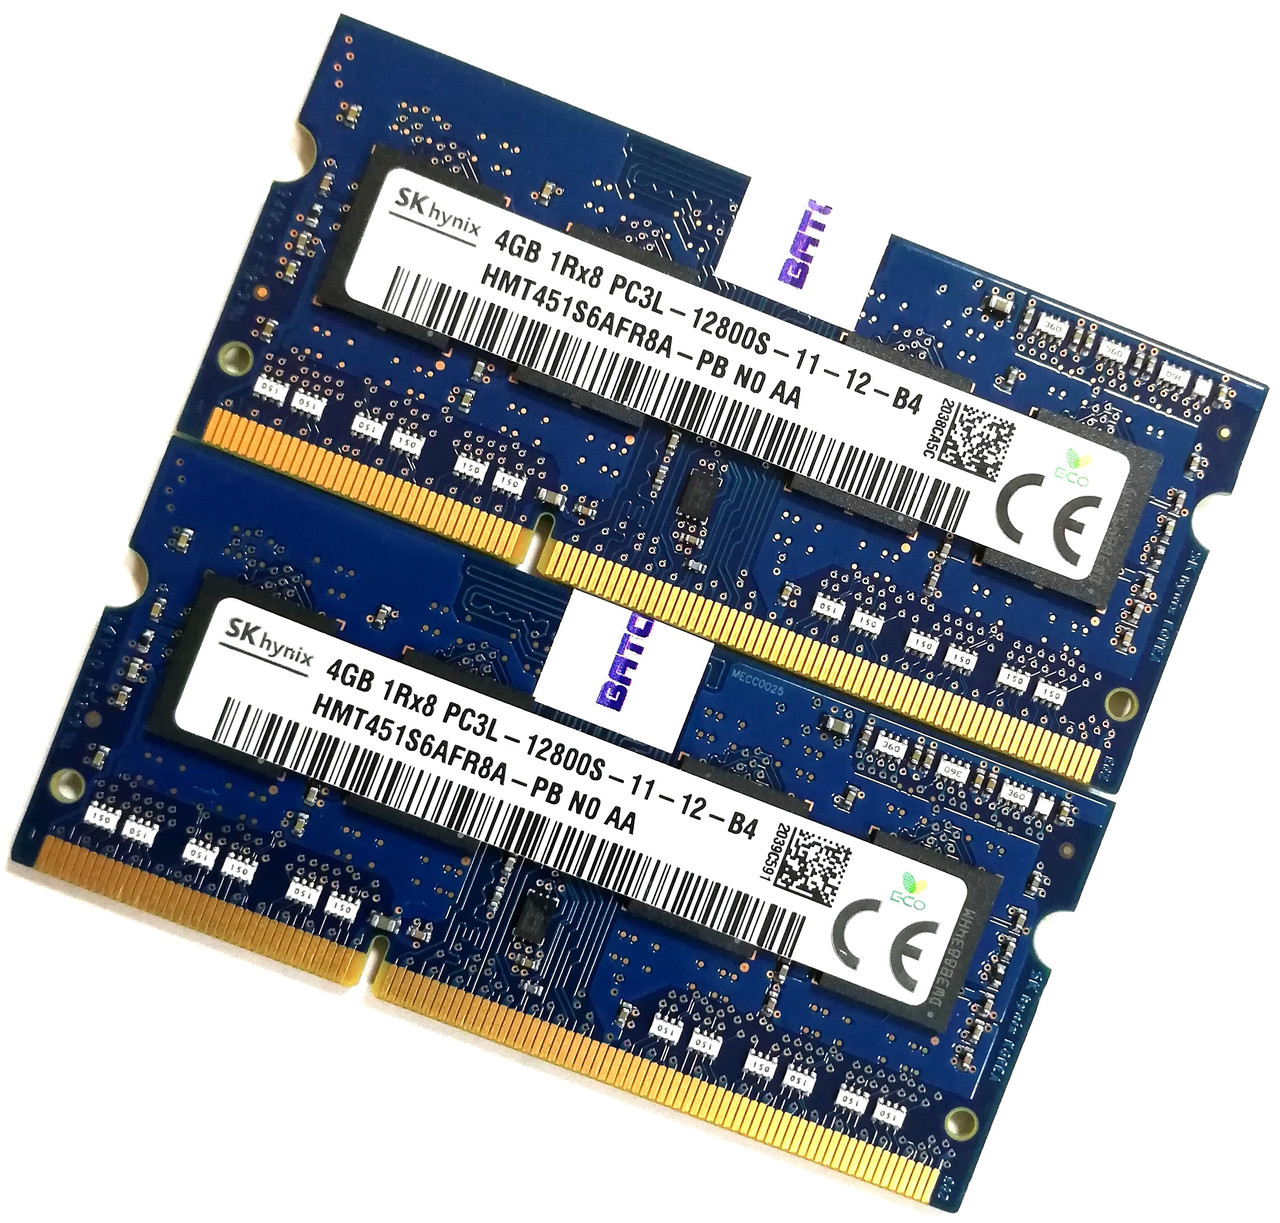 Пара оперативної пам'яті для ноутбука Hynix DDR3L 8Gb (4+4Gb) 1600MHz 12800s CL11 (HMT451S6AFR8A-PB N0 AA) Б/В